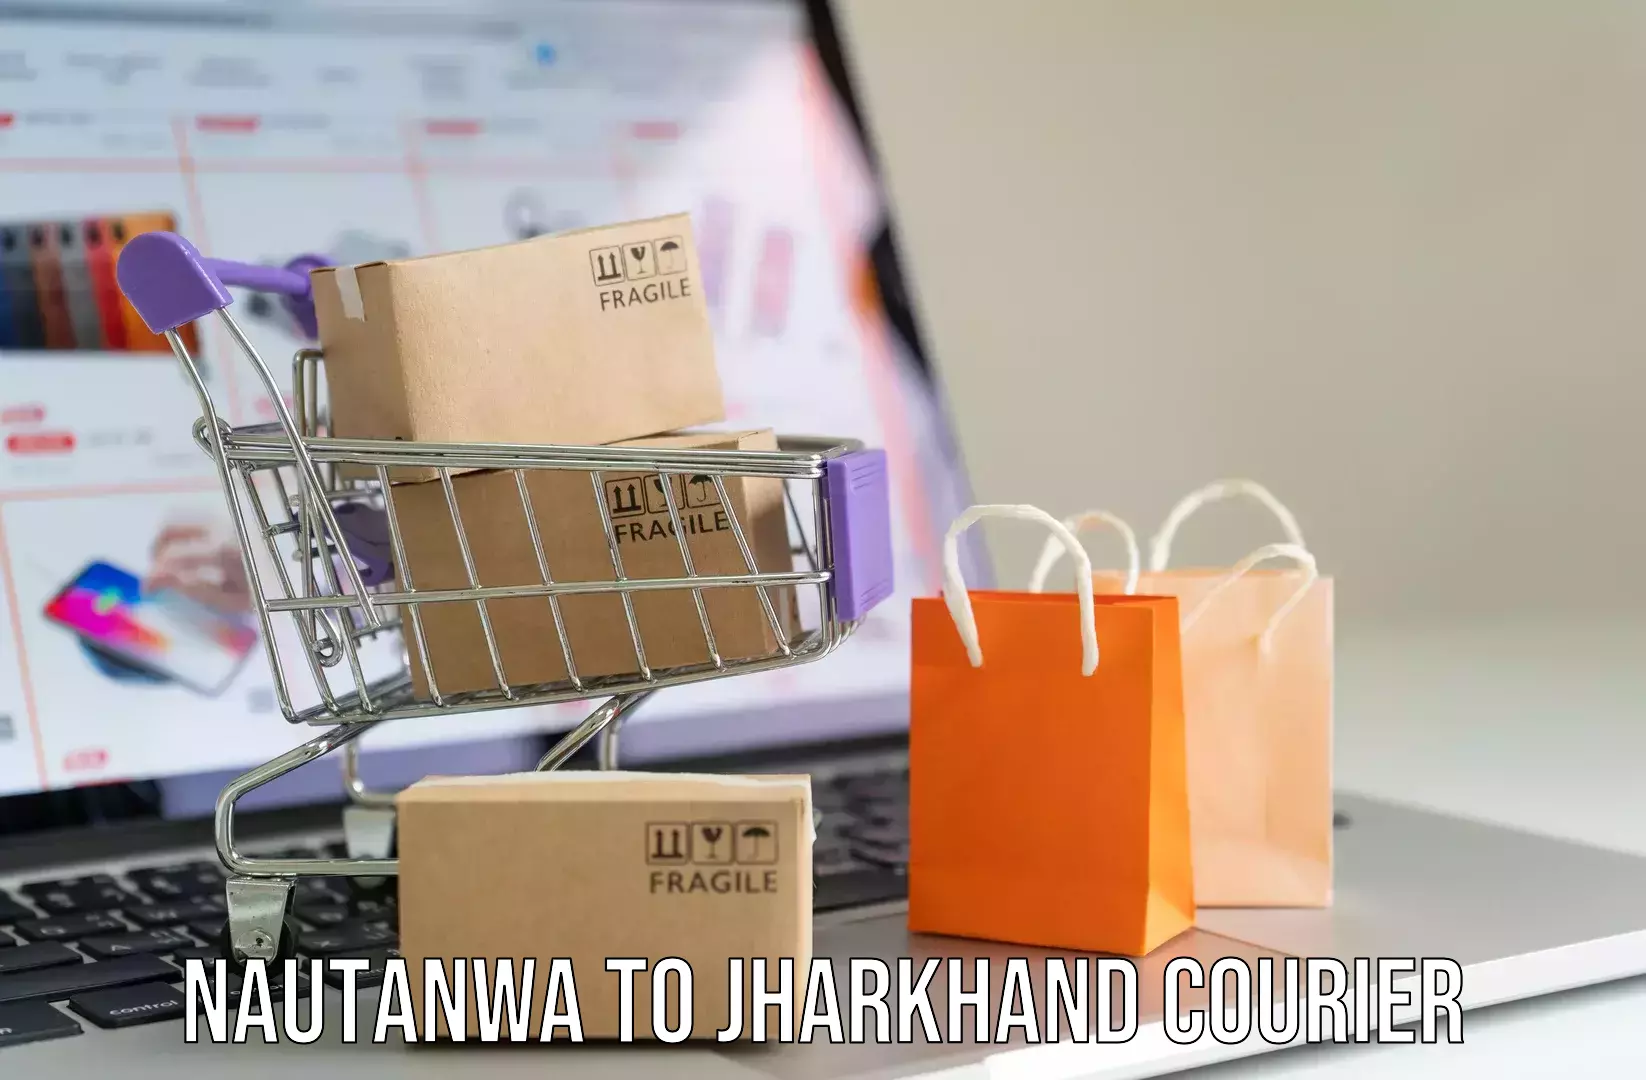 Hassle-free luggage shipping Nautanwa to IIT Dhanbad